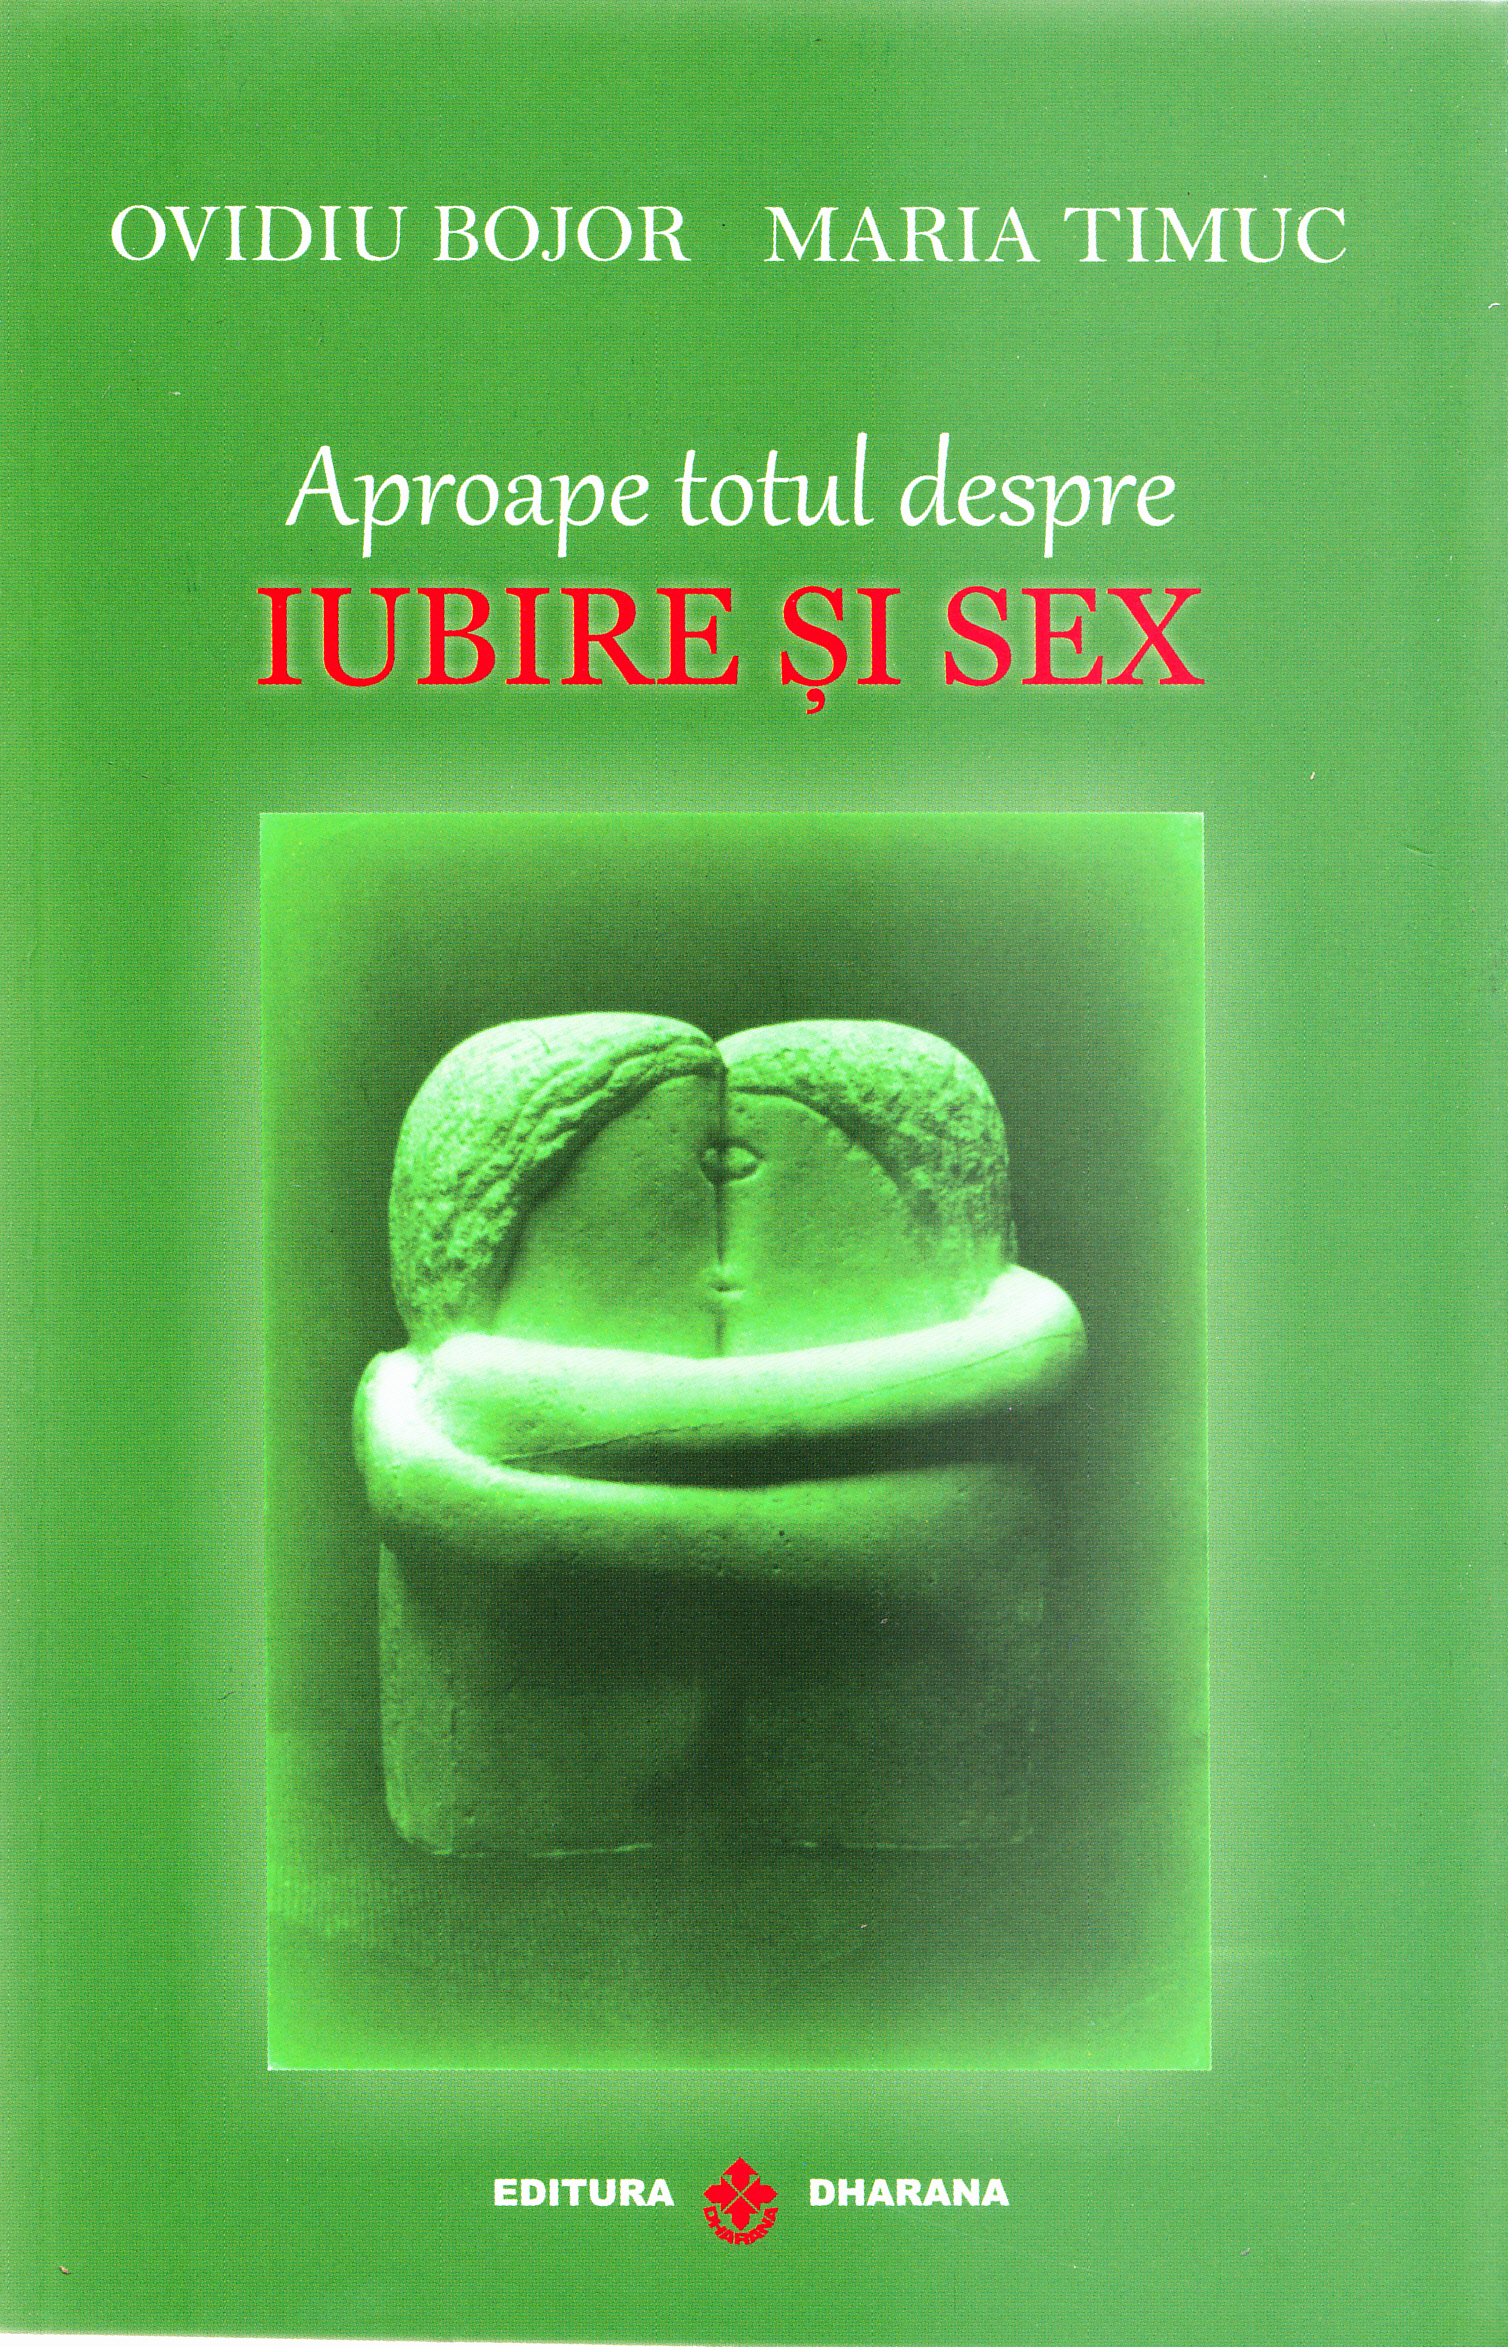 Aproape totul despre iubire si sex | Ovidiu Bojor, Maria Timuc De La Carturesti Carti Dezvoltare Personala 2023-10-01